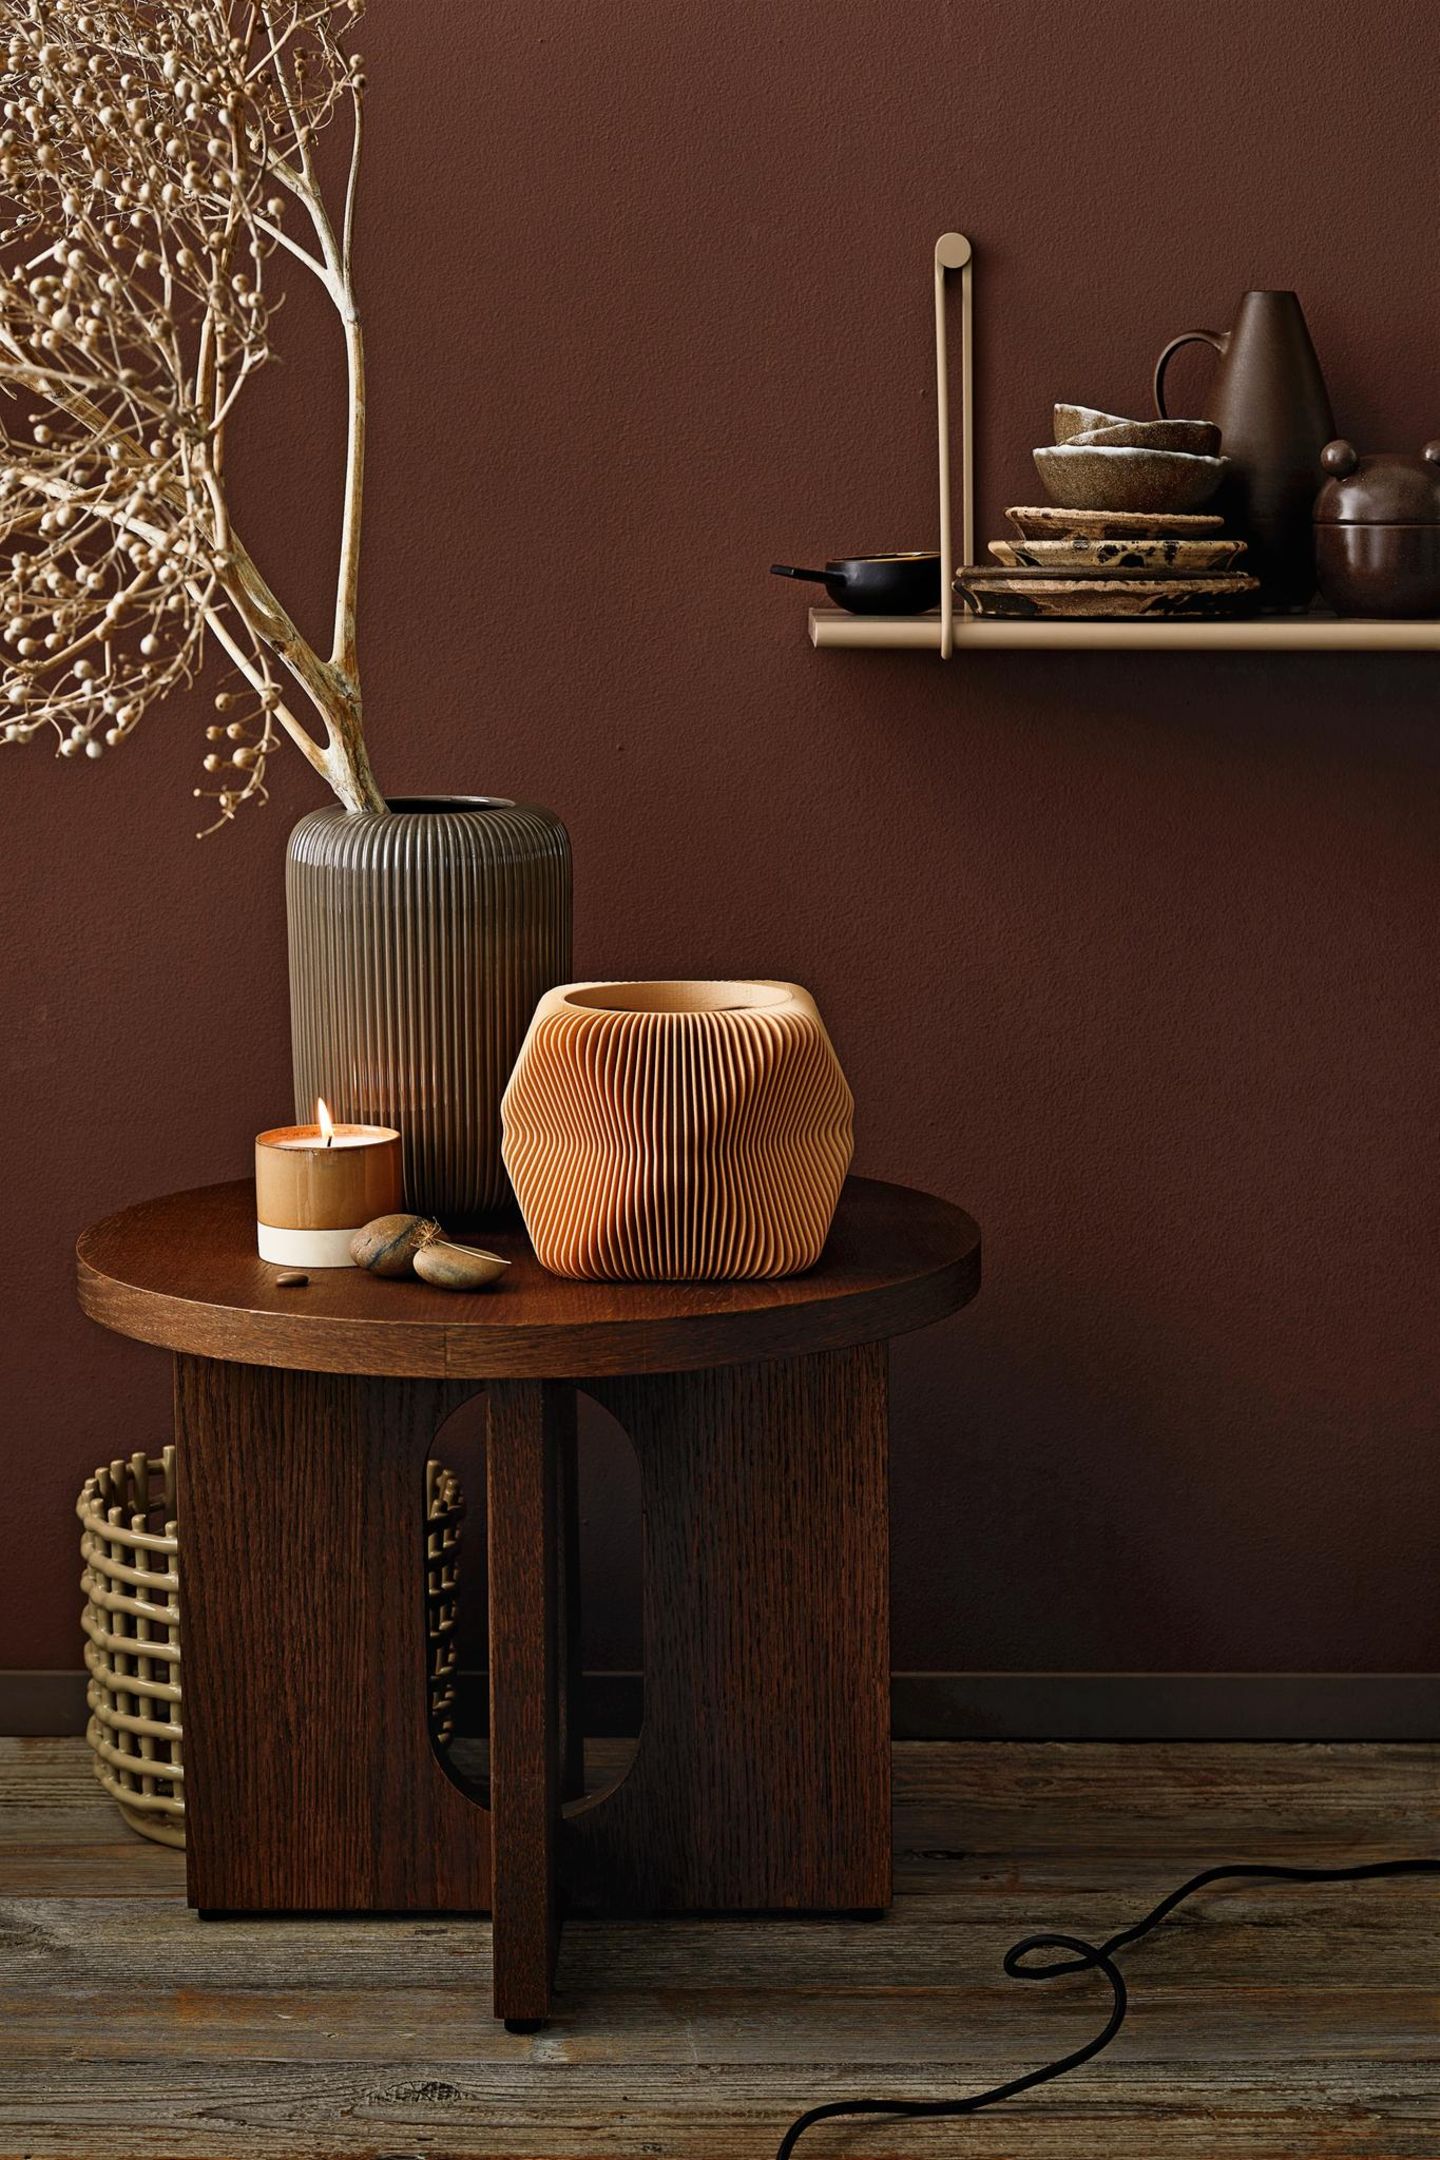 Ein Beistelltisch in dunklem Holz ist mit geriffelten Vasen und einer Kerze dekoriert; er steht vor einer dunkelbraunen Wand